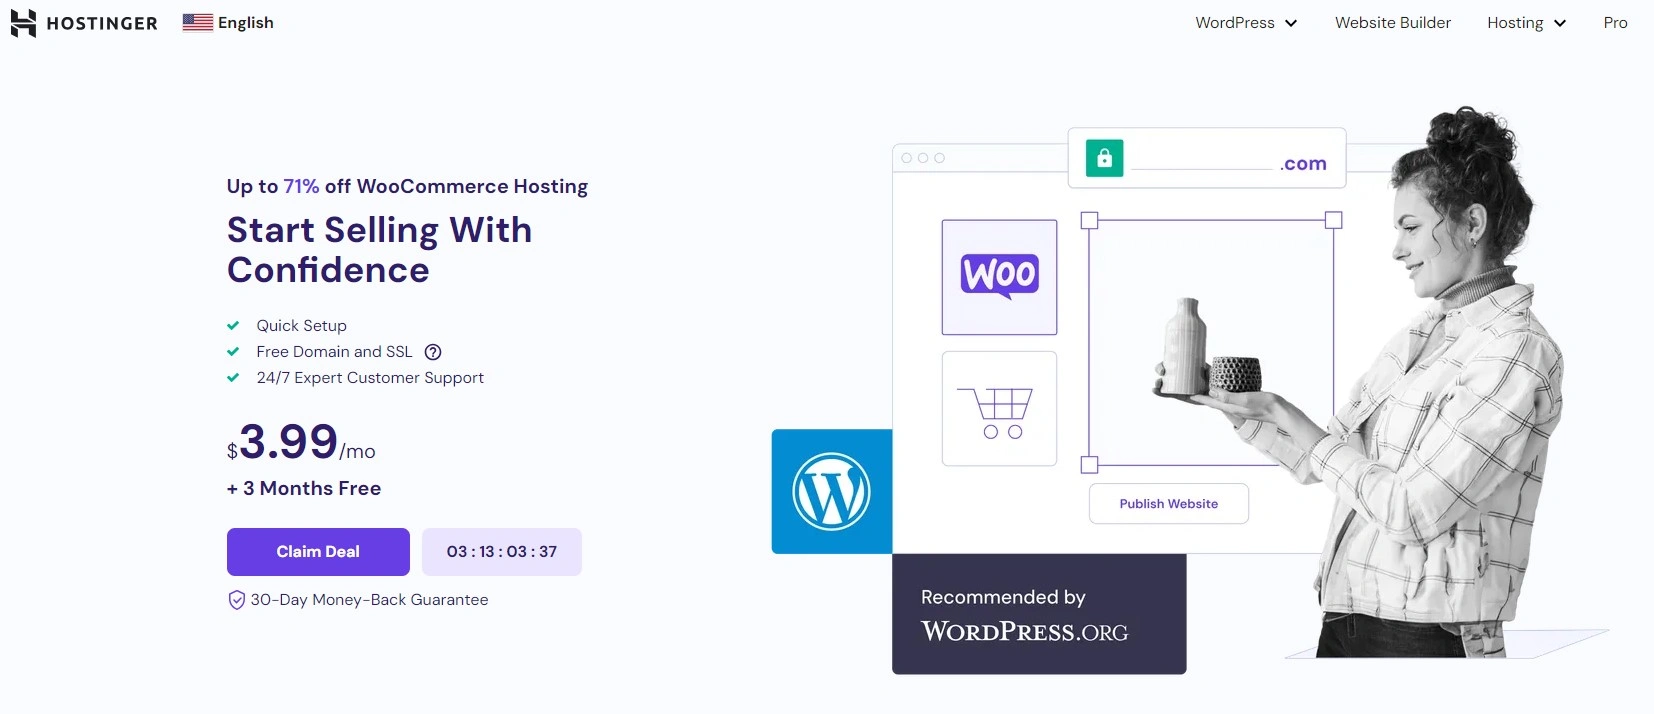 Hostinger - Web Hosting for Woocommerce